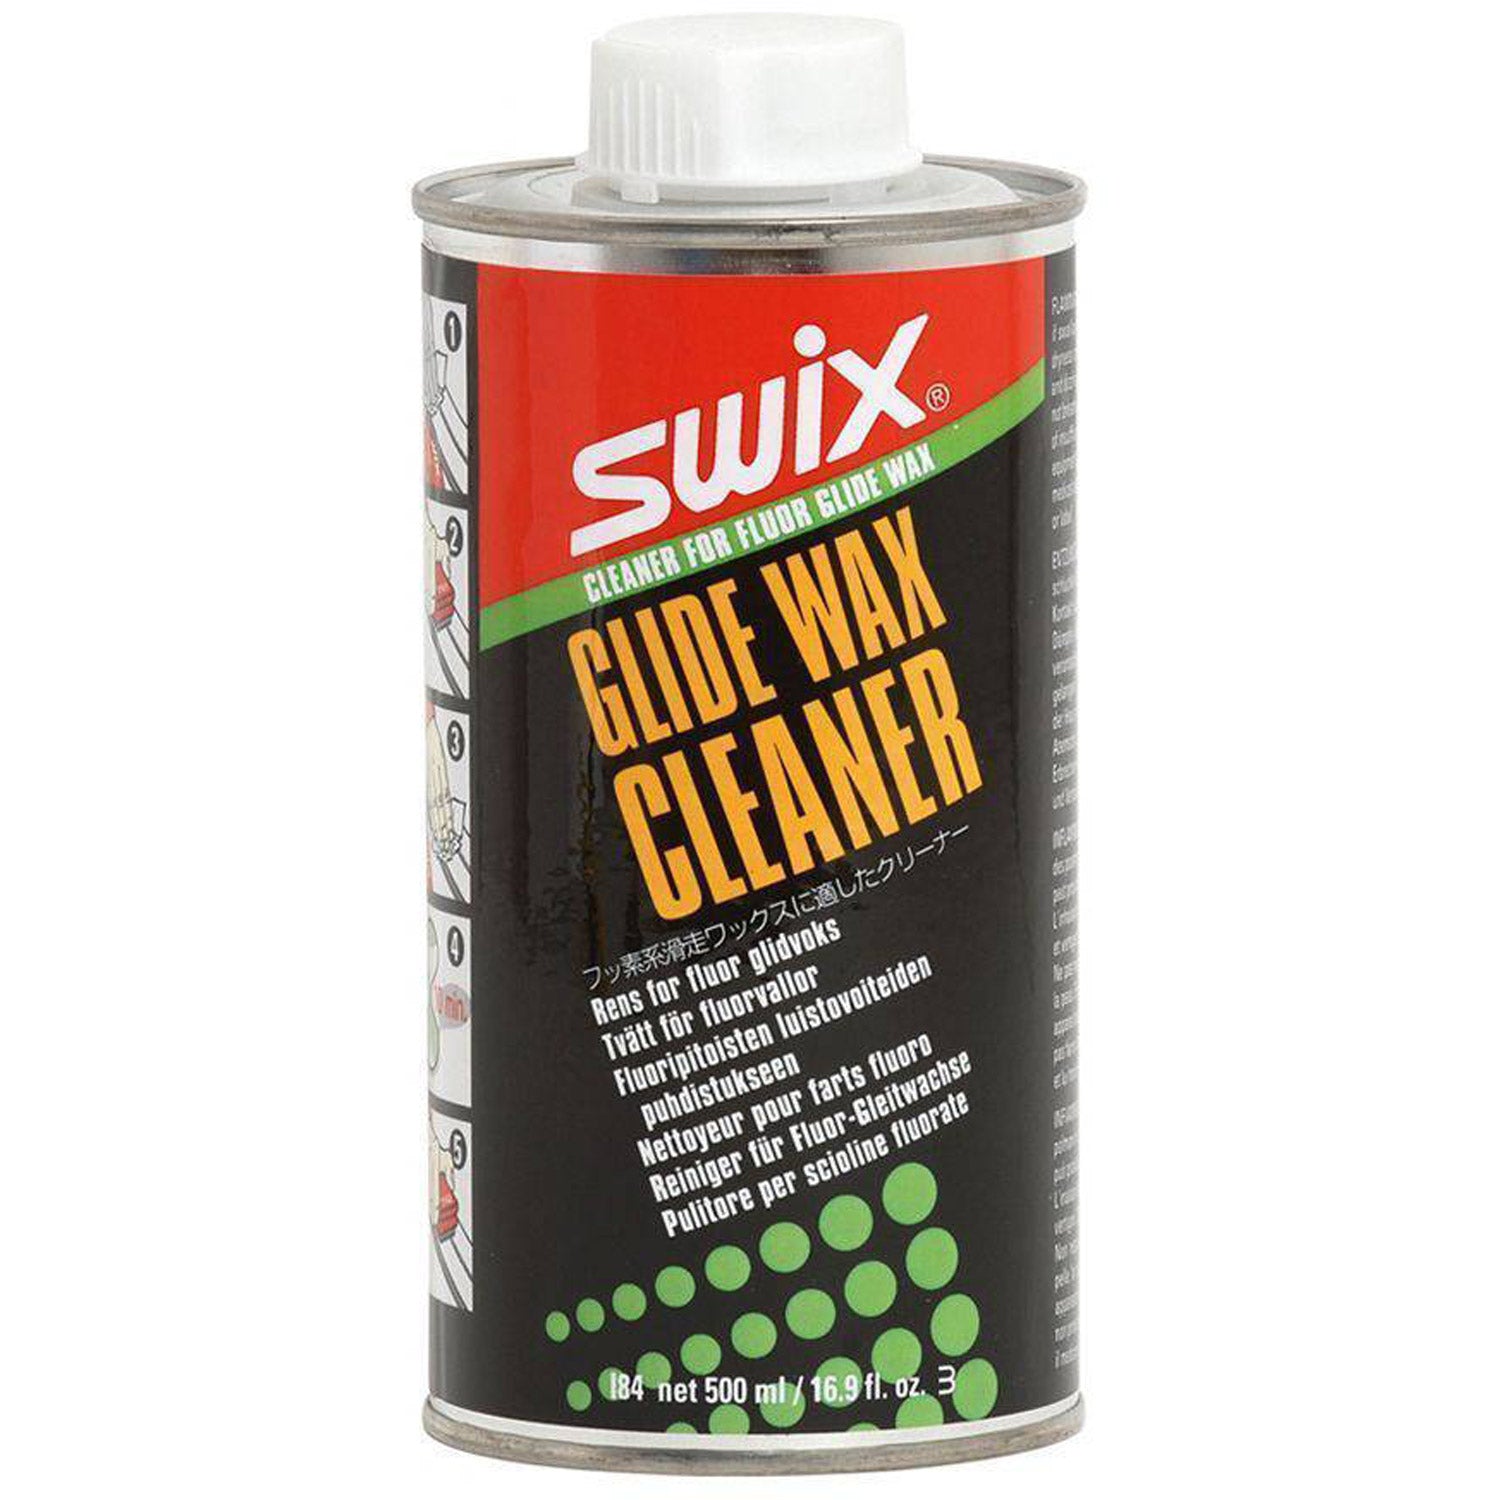 Glide Wax Cleaner 500ml I84